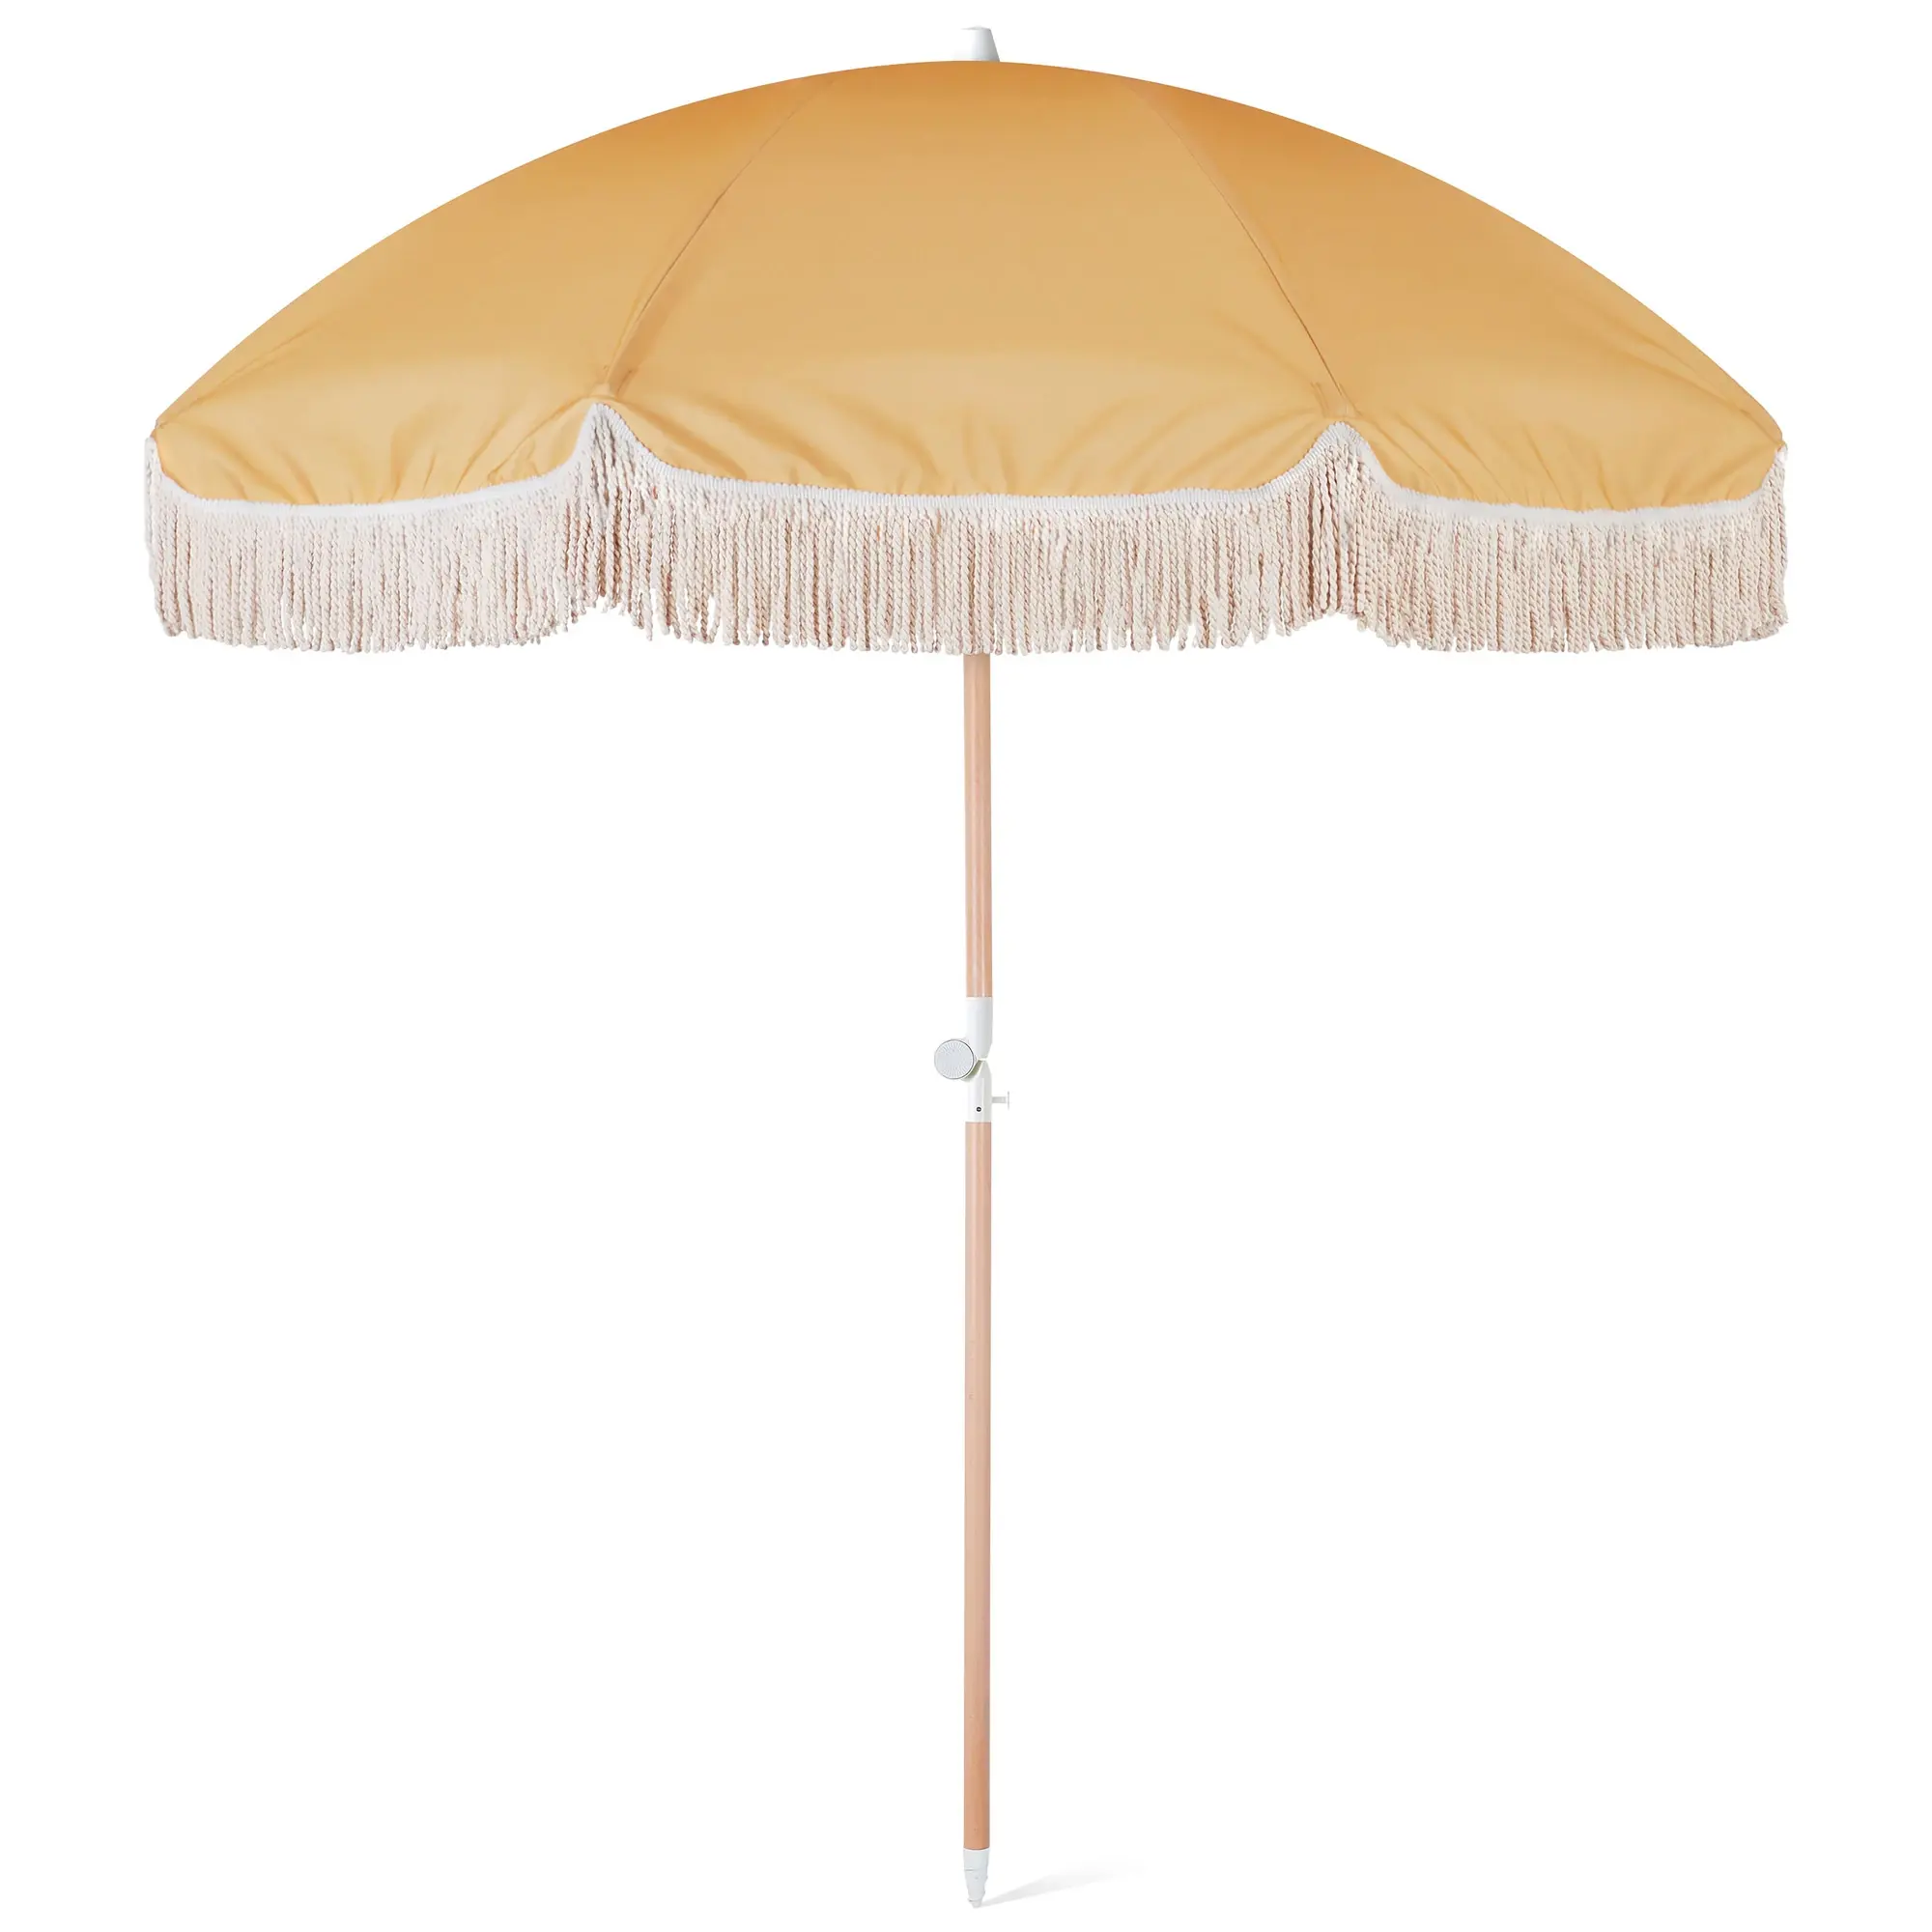 Оптовая продажа, 2 м, Желтый Прочный регулируемый пляжный зонт